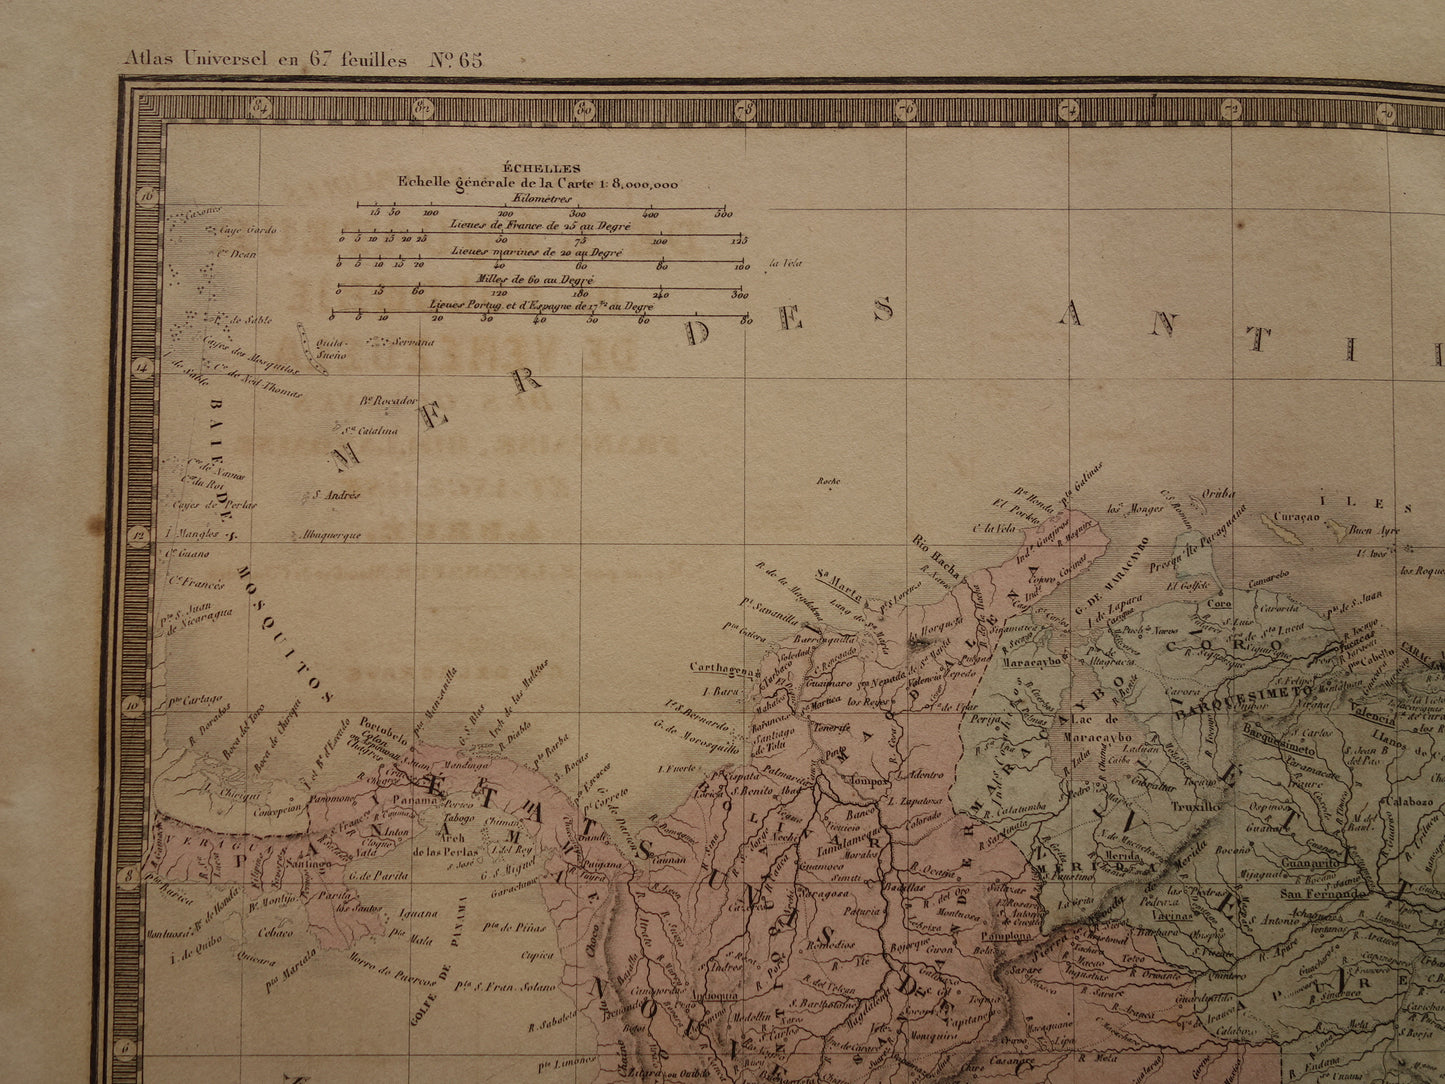 Oude kaart van Colombia Venezuela Suriname uit 1876 Grote originele antieke landkaart van de Ecuador Amazone rivier Brazilië